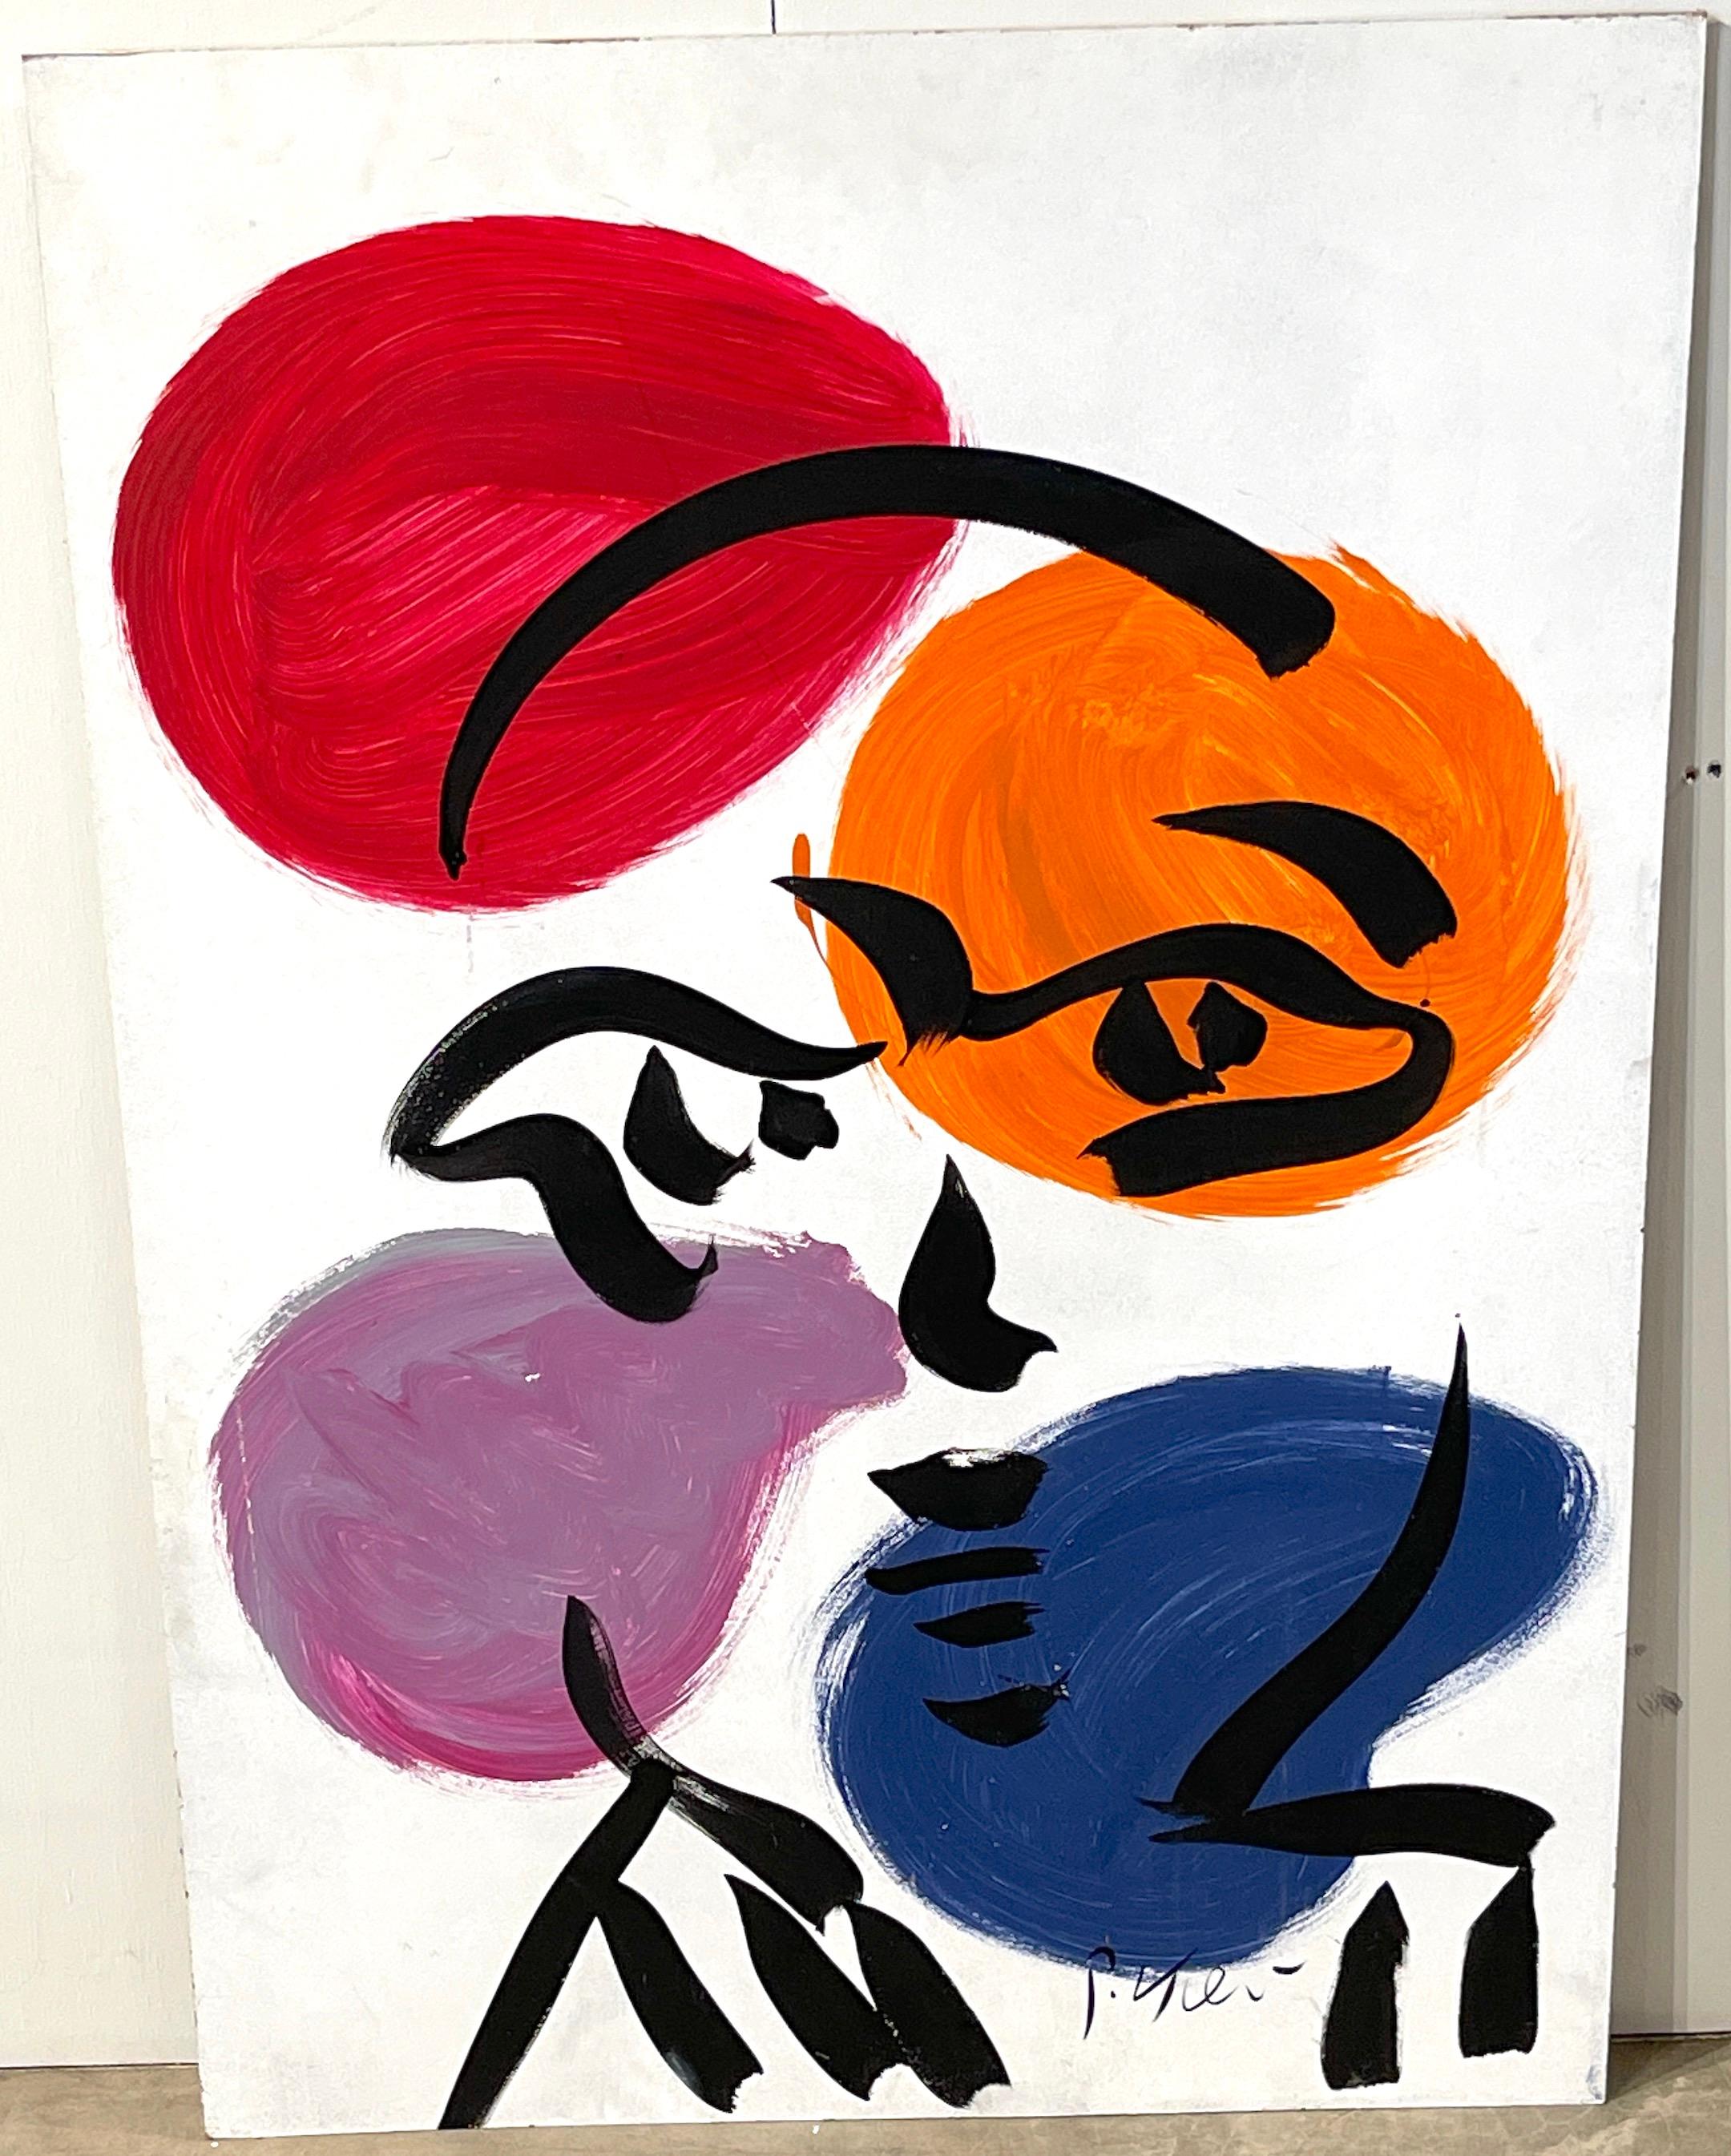 Unbetiteltes Porträt - II
Peter Keil, Berlin, 1970er Jahre
Öl auf Karton, ungerahmt 
Die Einflüsse von Pablo Picasso und Matisse sowie Alexander Calder sind offensichtlich.
A  großes, ausgewogenes Werk aus den 1970er Jahren von Peter Keil.
Öl auf